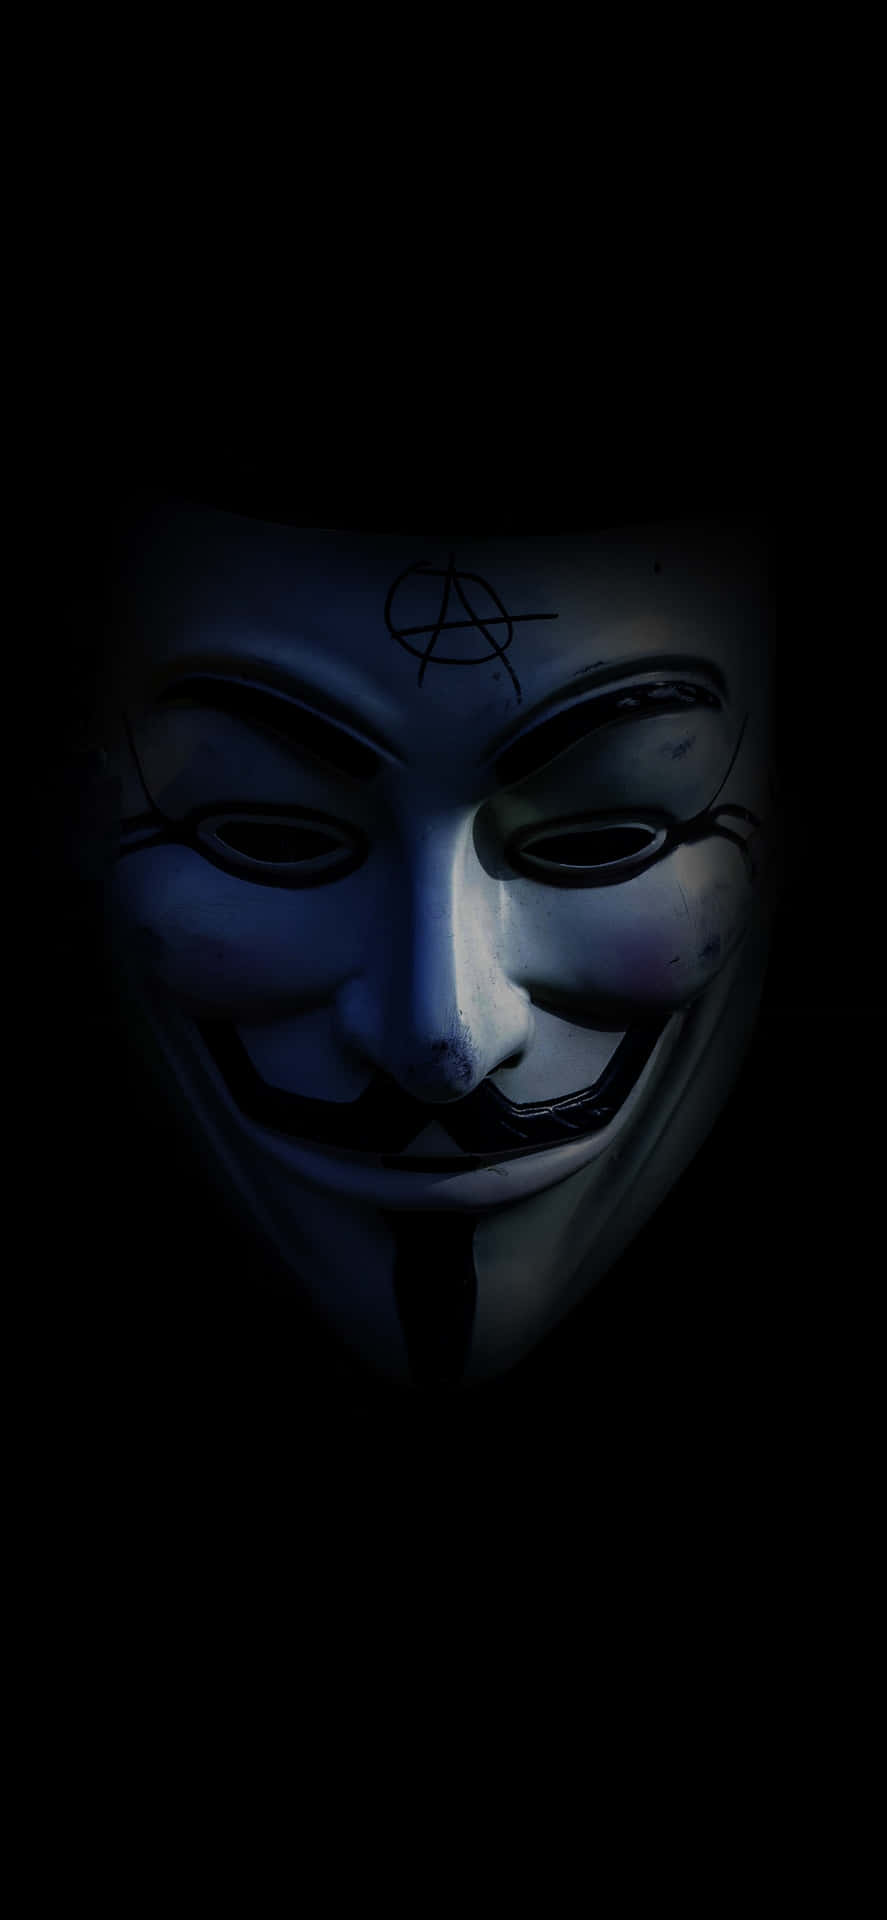 Enmörk Bild Av En V För Vendetta Mask På En Datorskärm Eller Mobil Bakgrund. Wallpaper